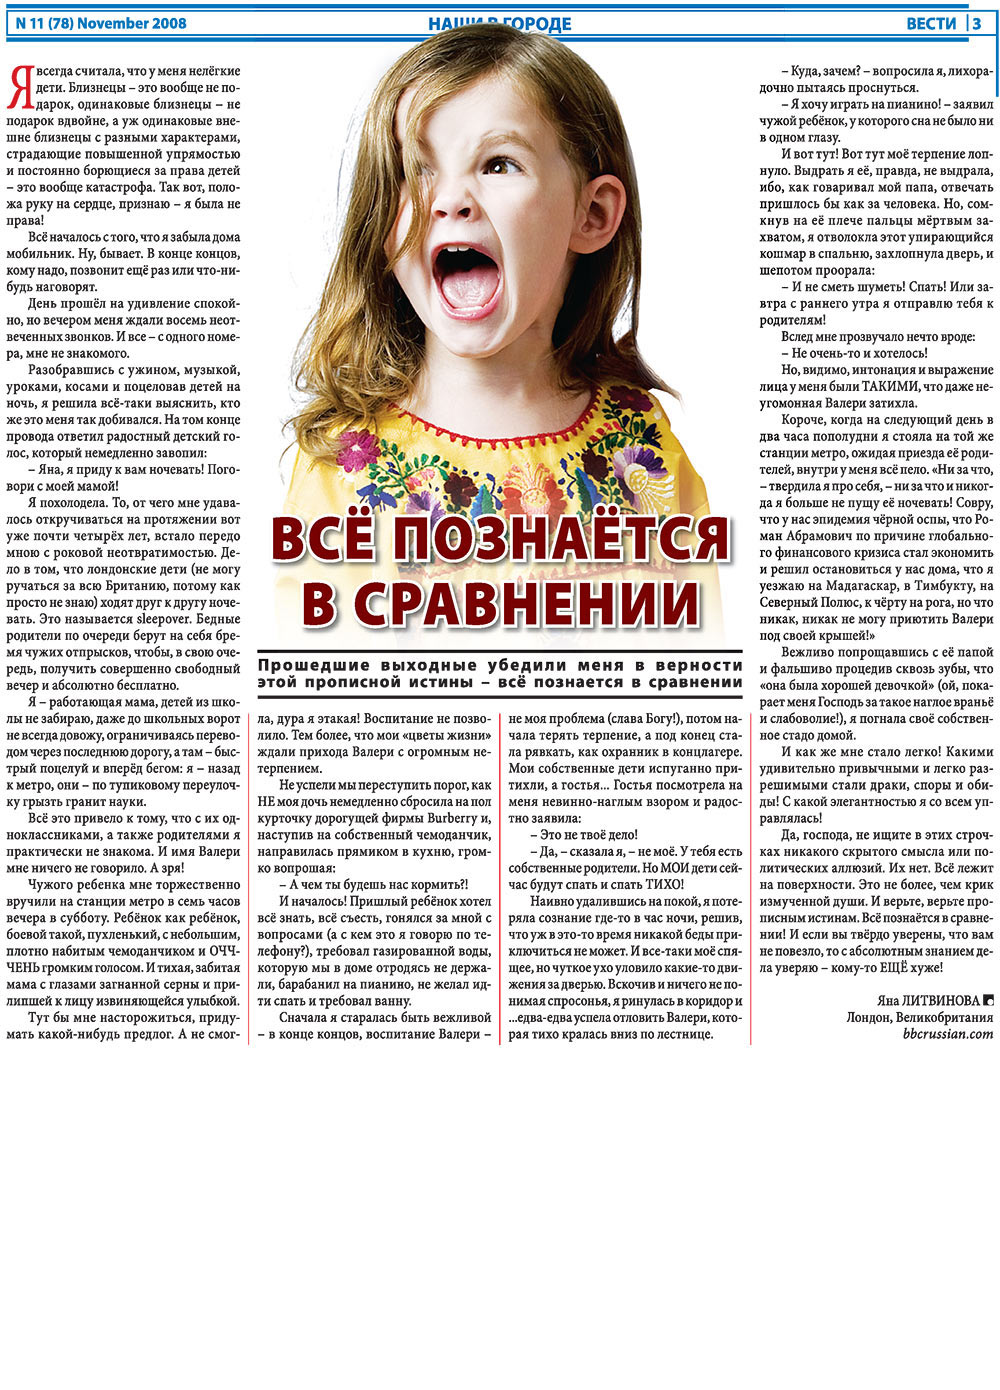 Вести, газета. 2008 №11 стр.3